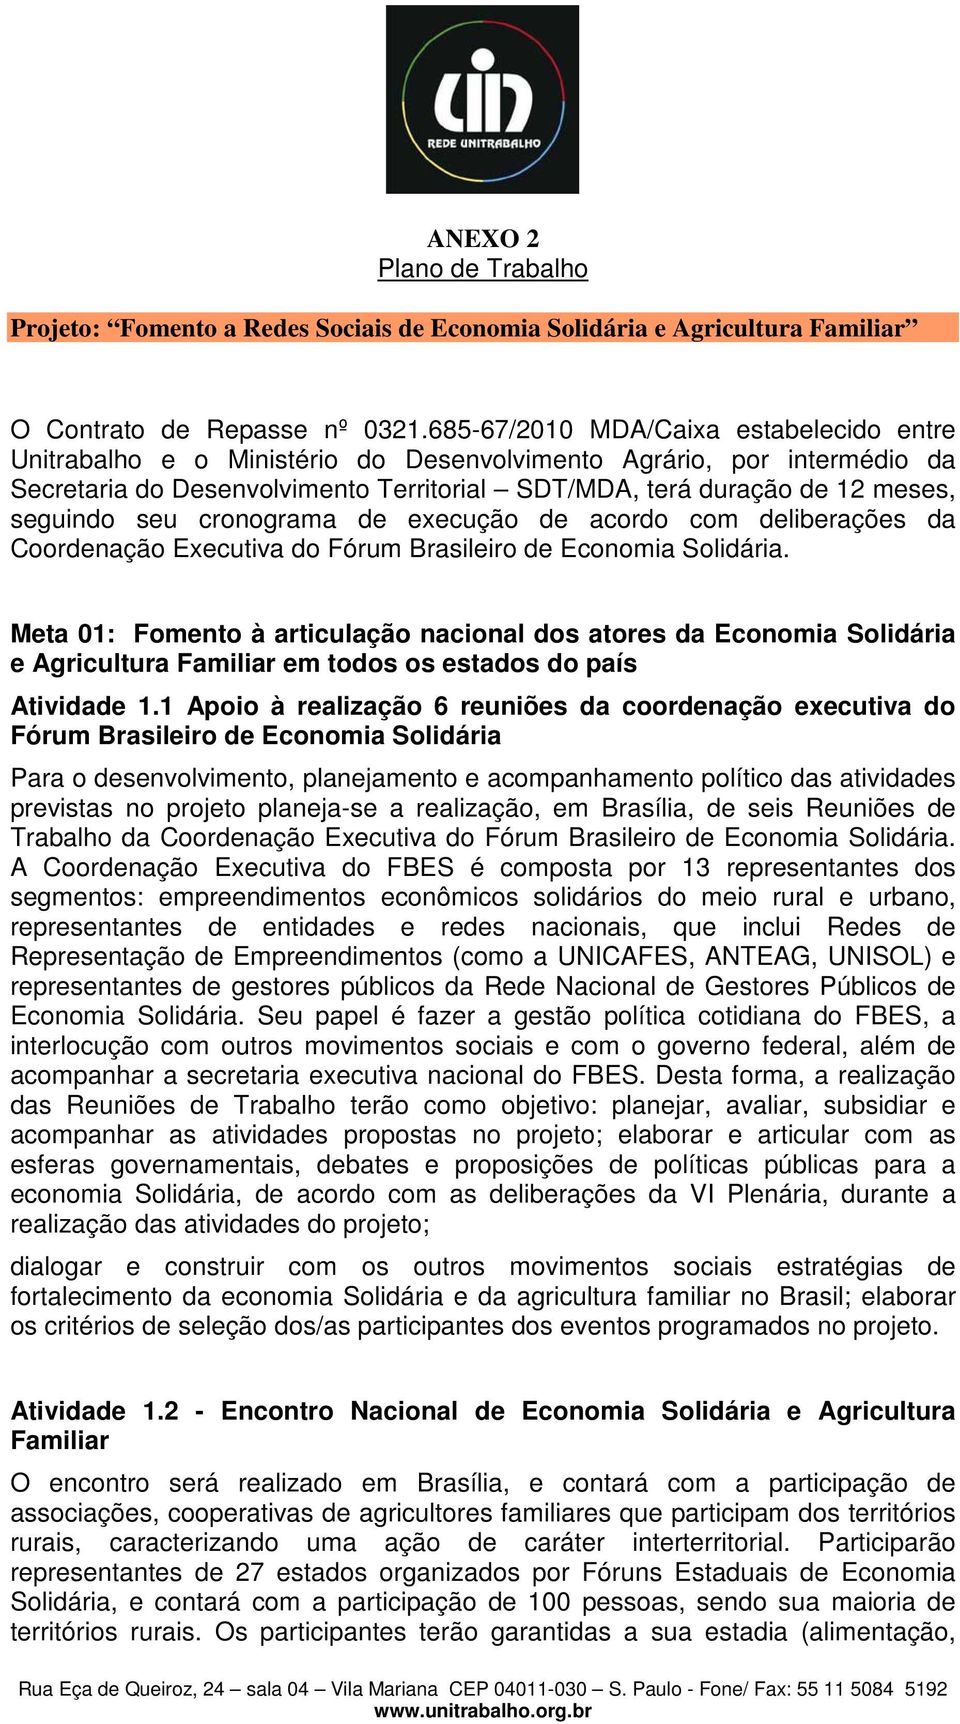 seu cronograma de execução de acordo com deliberações da Coordenação Executiva do Fórum Brasileiro de Economia Solidária.